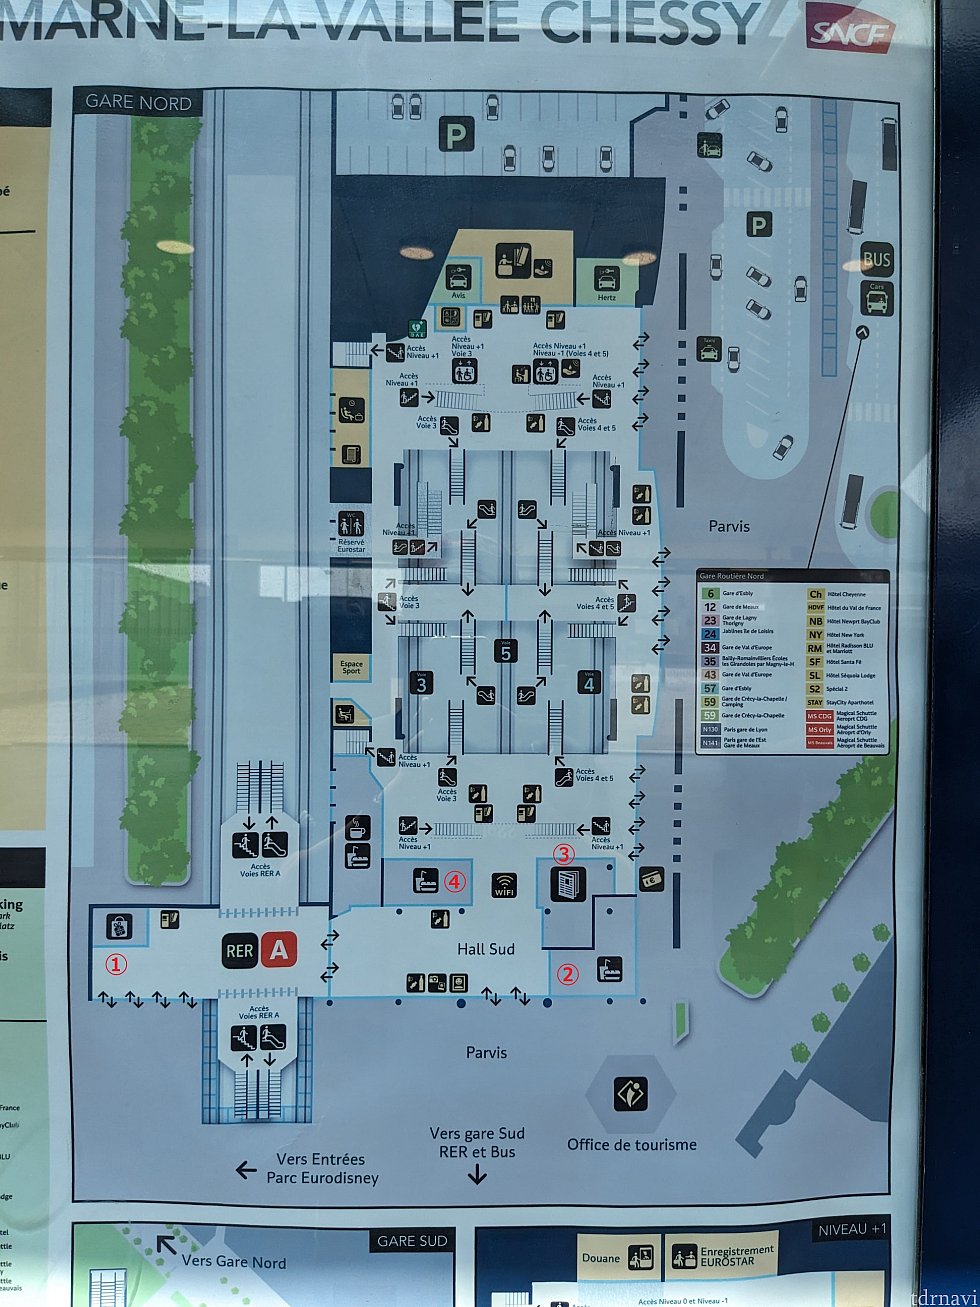 構内地図です。<br>
A線やTGV出来たら、こちらのマップのどこかから出てきます。<br>
下がランド/スタジオ/village側。<br>
右がホテルへのバス乗り場です。